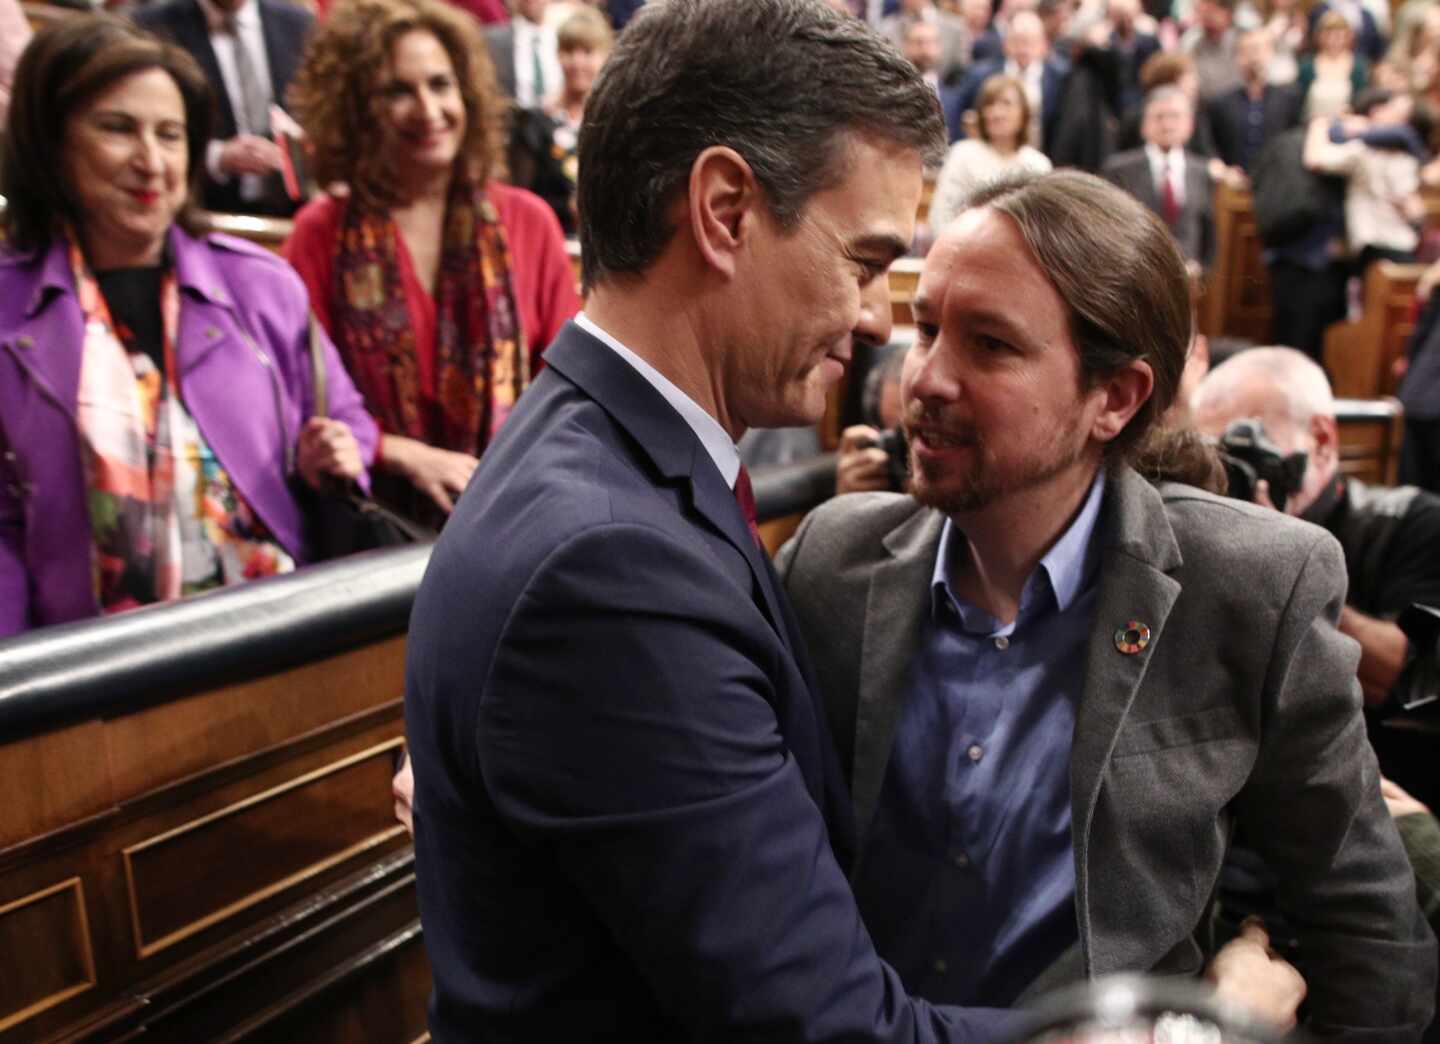 PSOE-Unidas Podemos: La lucha por el relato